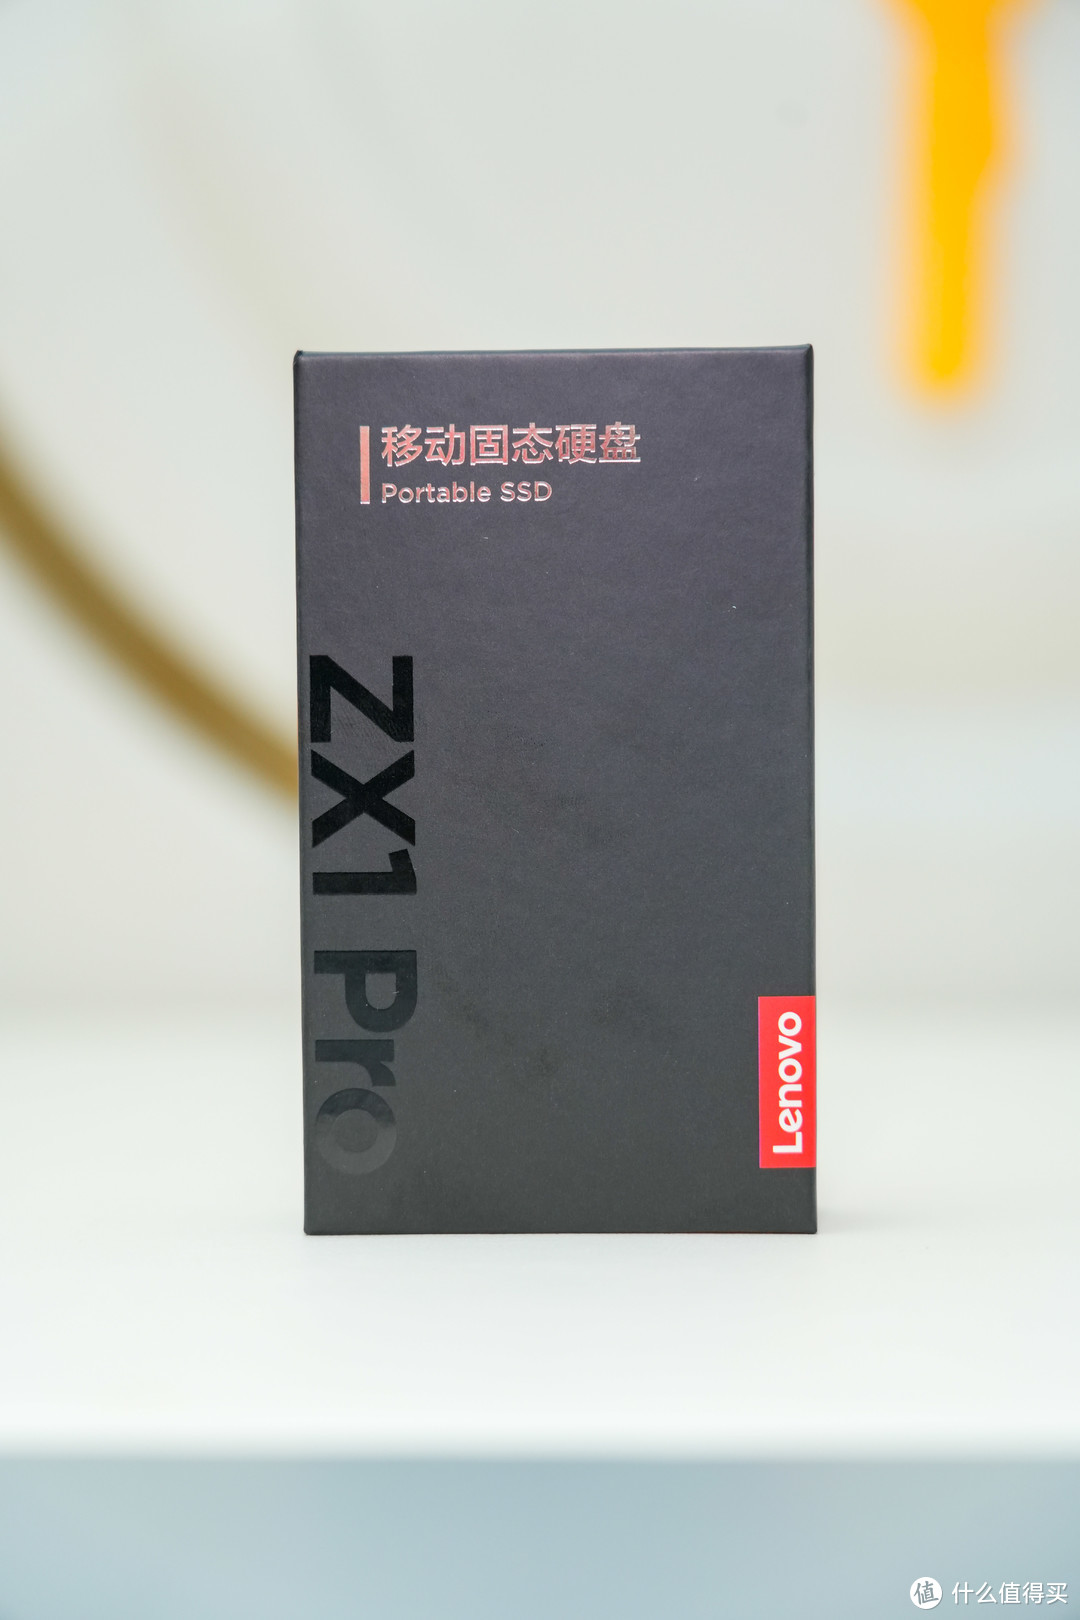 联想ZX1Pro系列移动固态硬盘：创新技术与便携性的完美结合